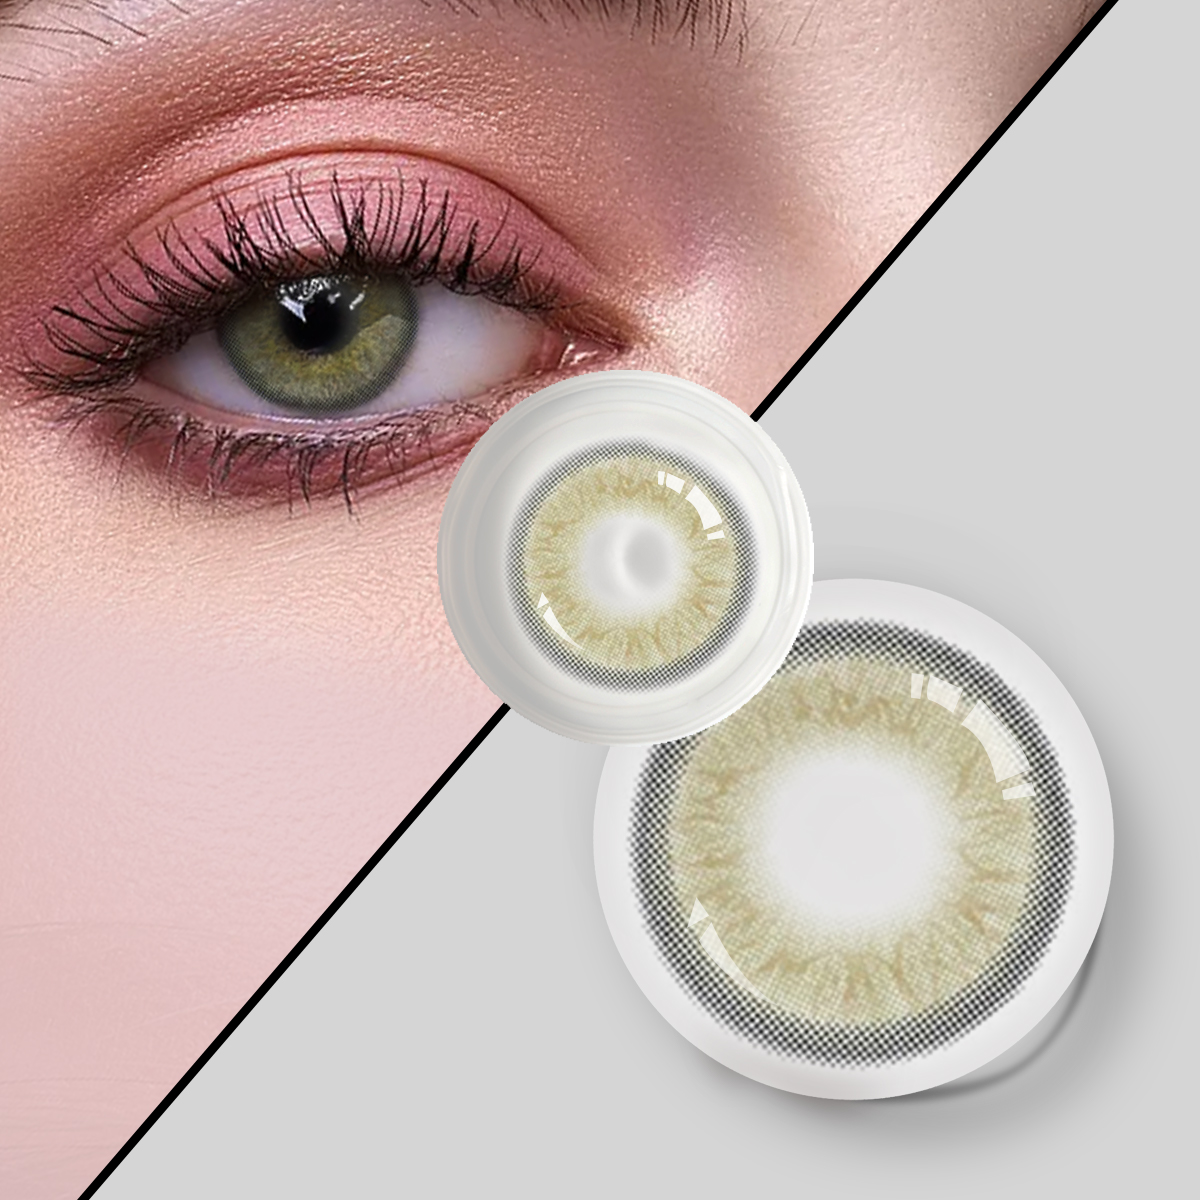 Dbeyes 3 tonų metiniai kontaktiniai lęšiai naujo stiliaus didmeninė prekyba spalvotais akių kontaktiniais lęšiais